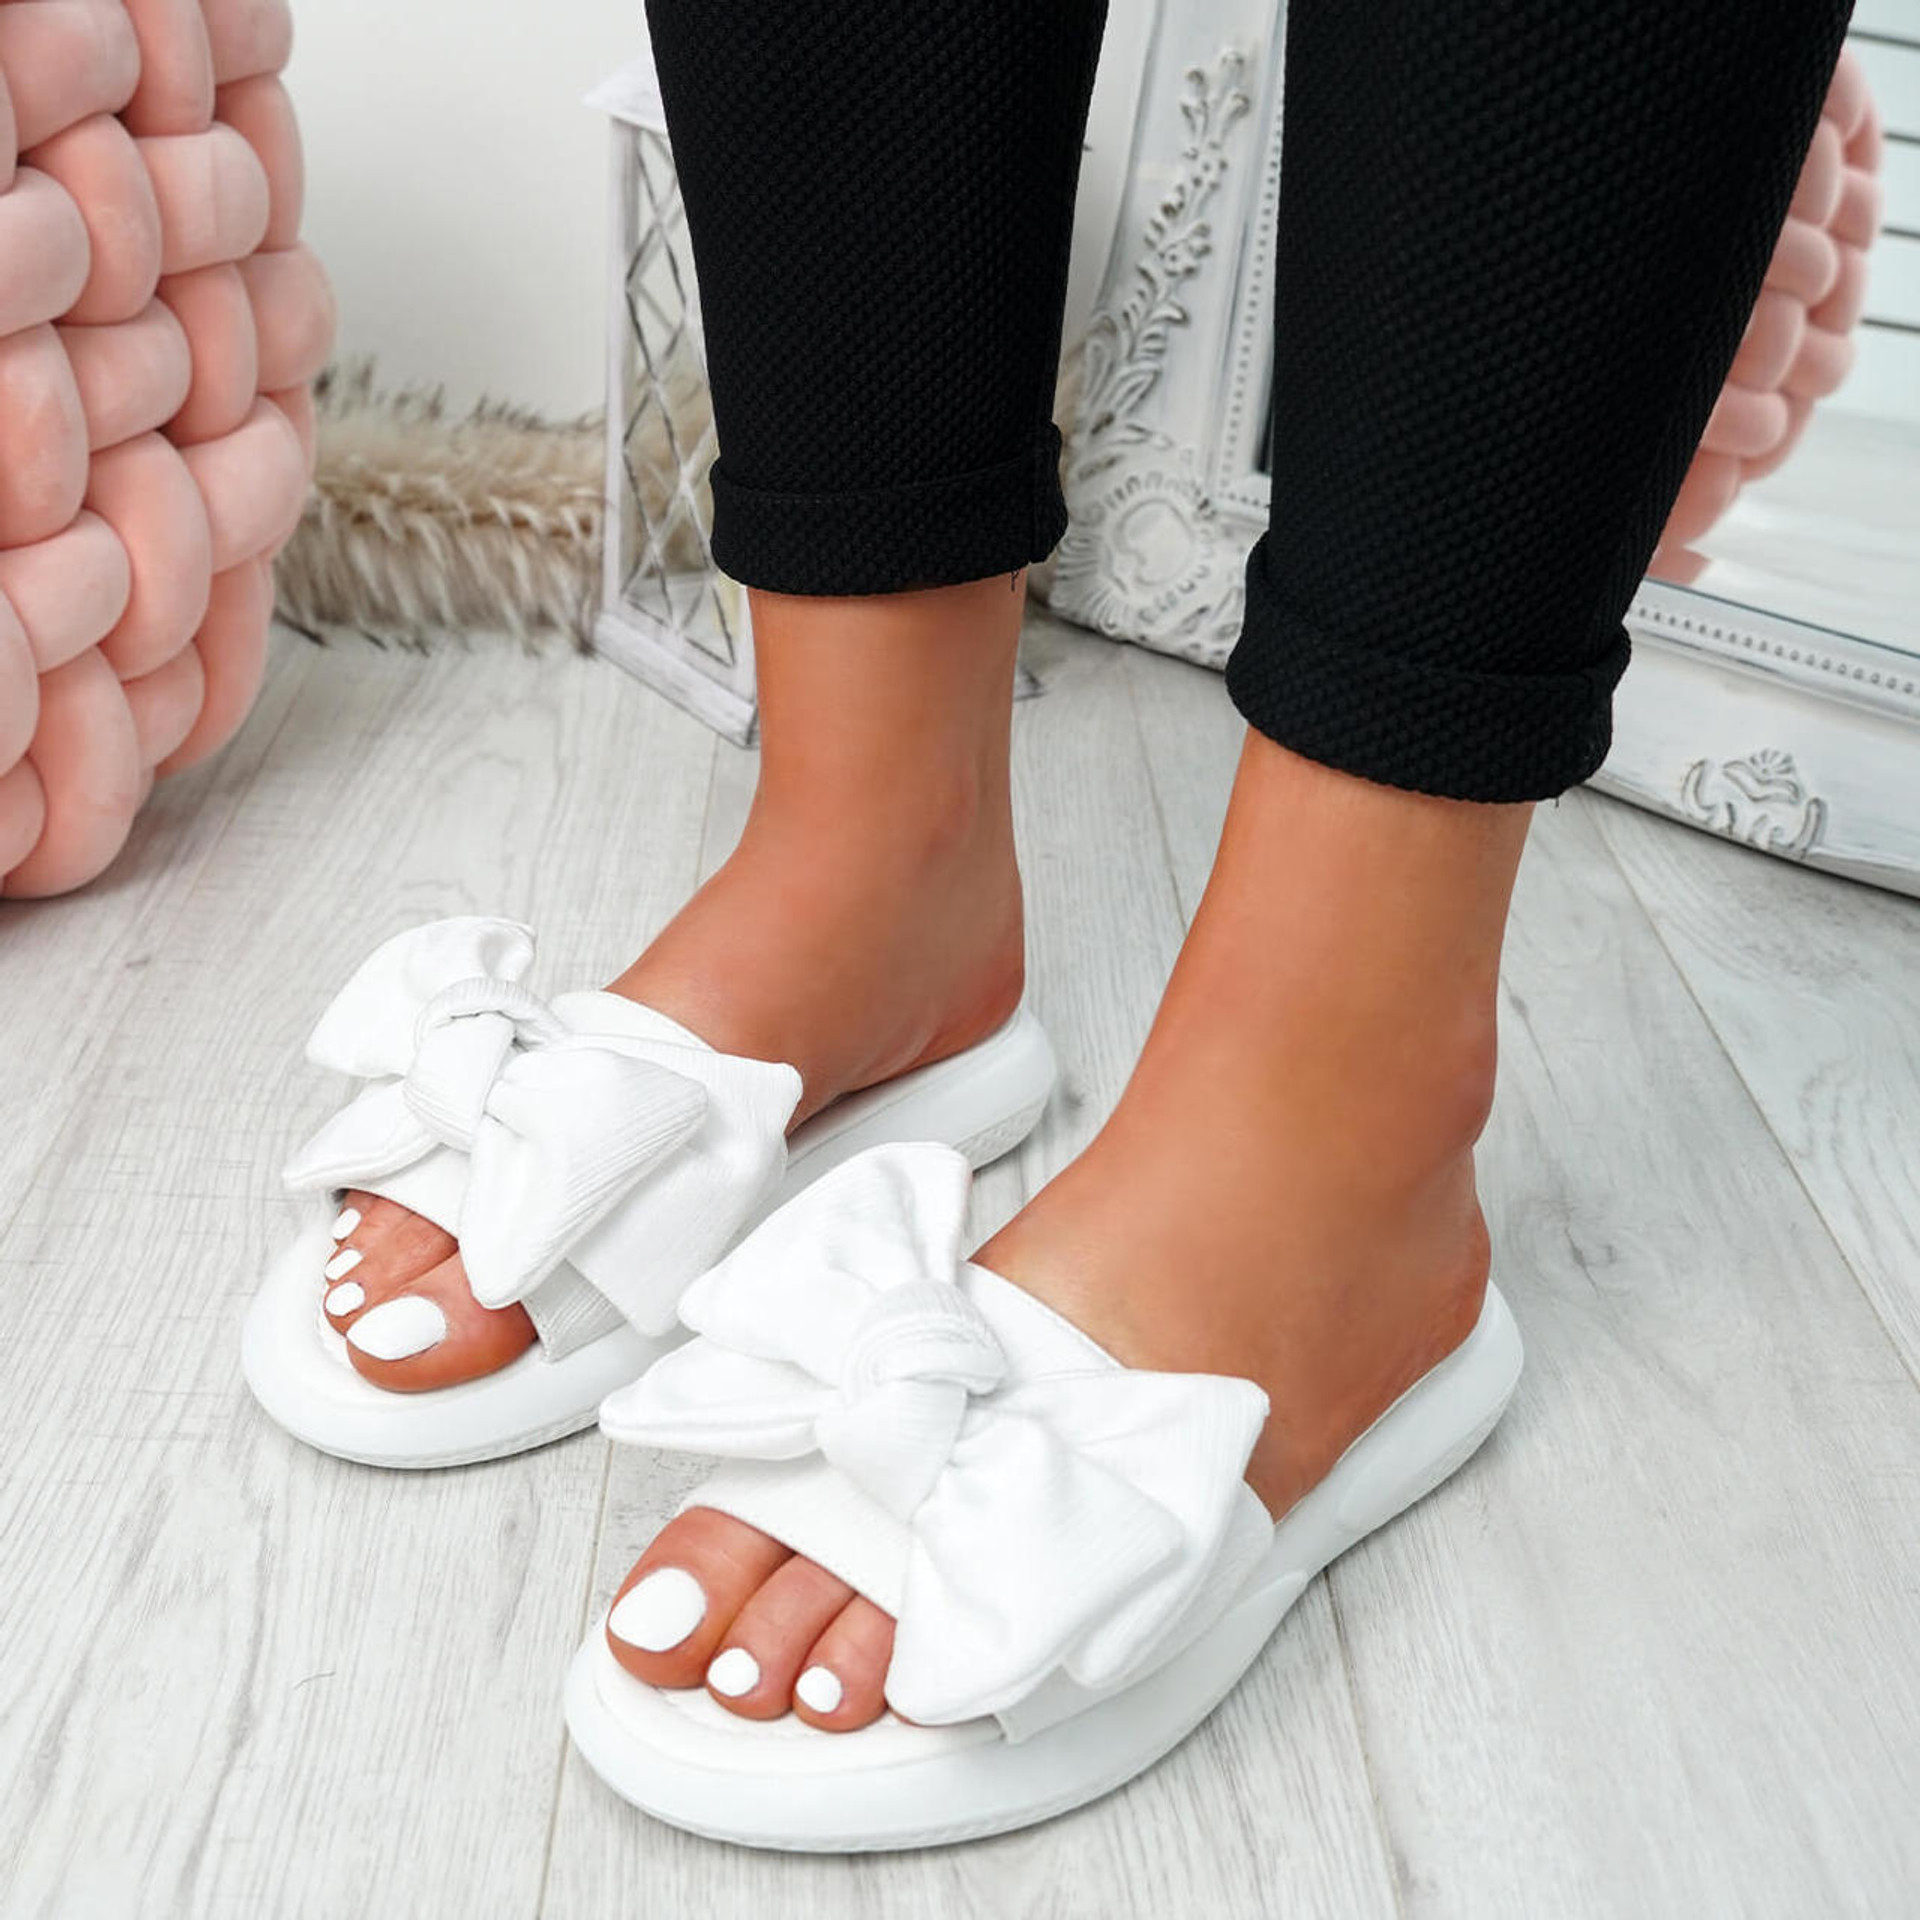 Lufa White Bow Sliders Sandals